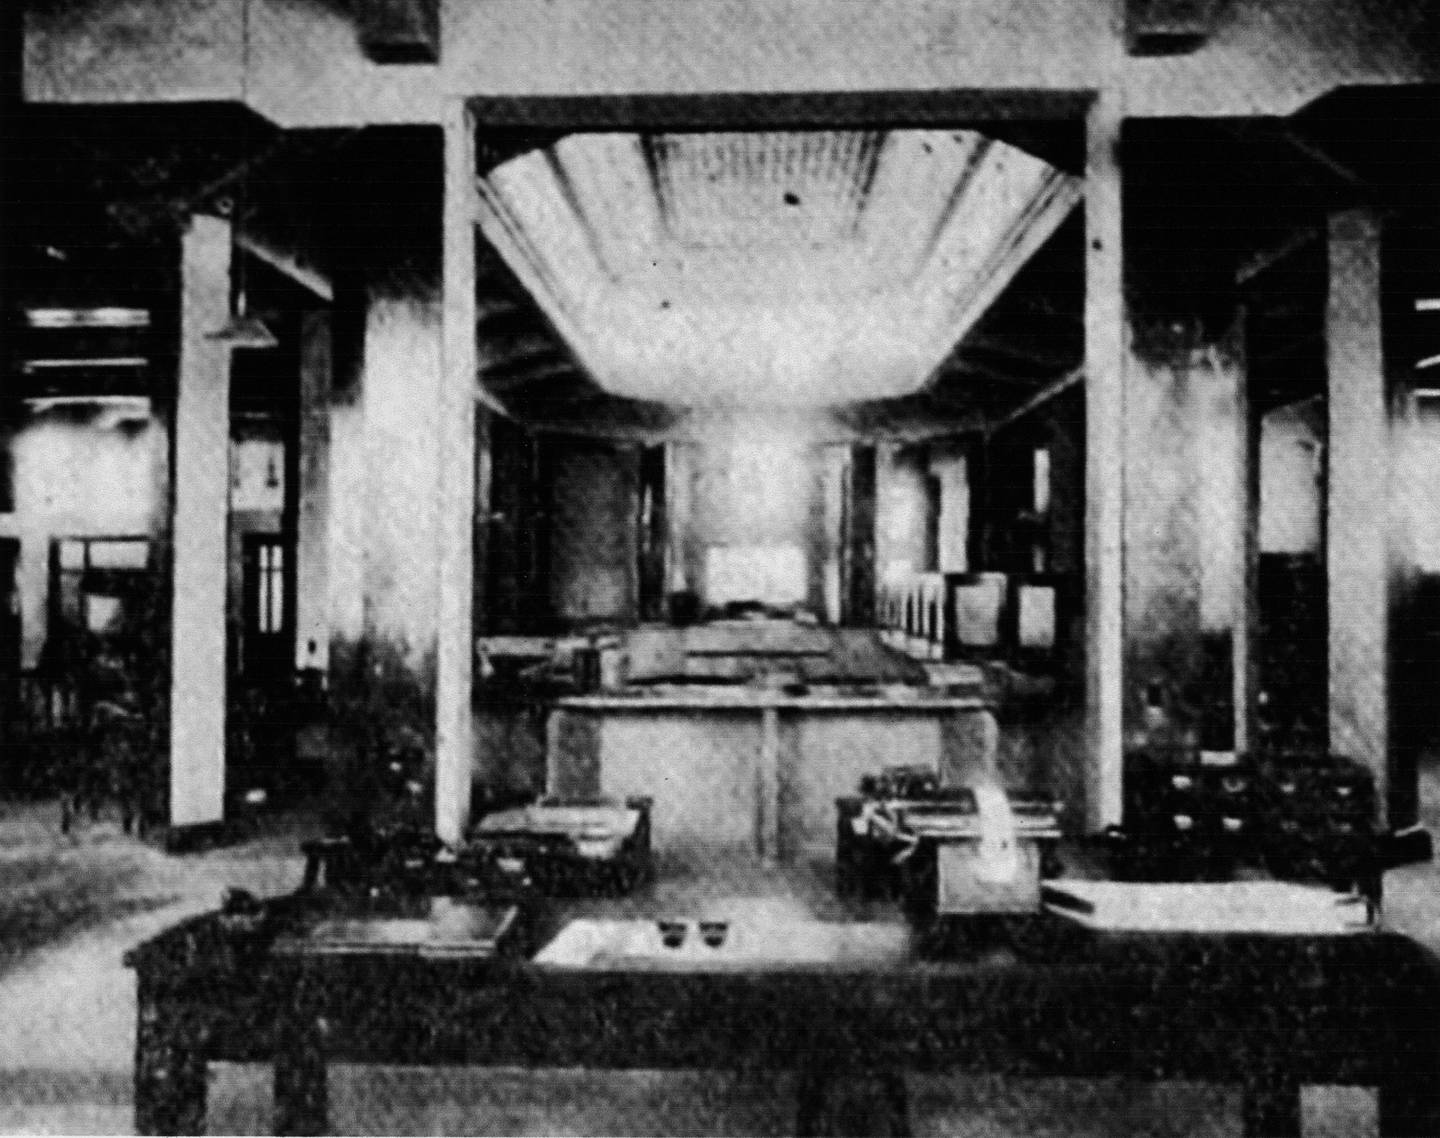 ista interior del edificio del Banco Nacional de Seguros recién inaugurado, en 1933.
Área administrativa. Fotografía de autor no determinado.